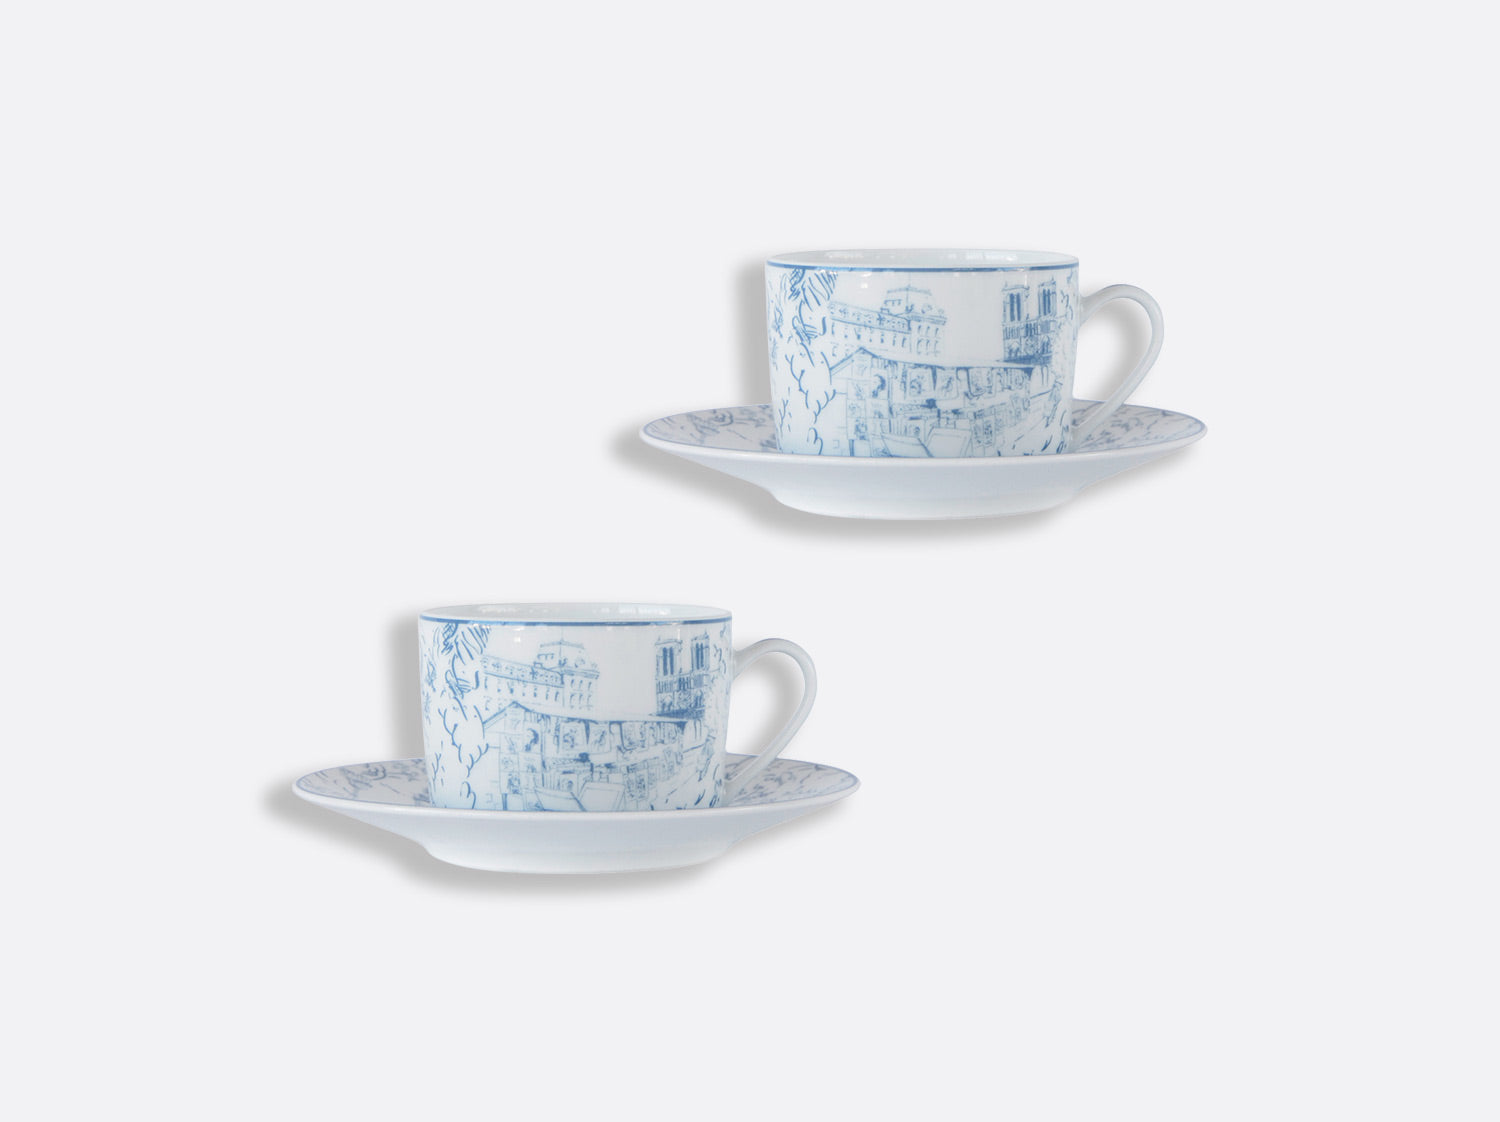 Maison Lipari Tout Paris Teacup & Saucer - Set of 2 - White & Blue  BERNARDAUD.